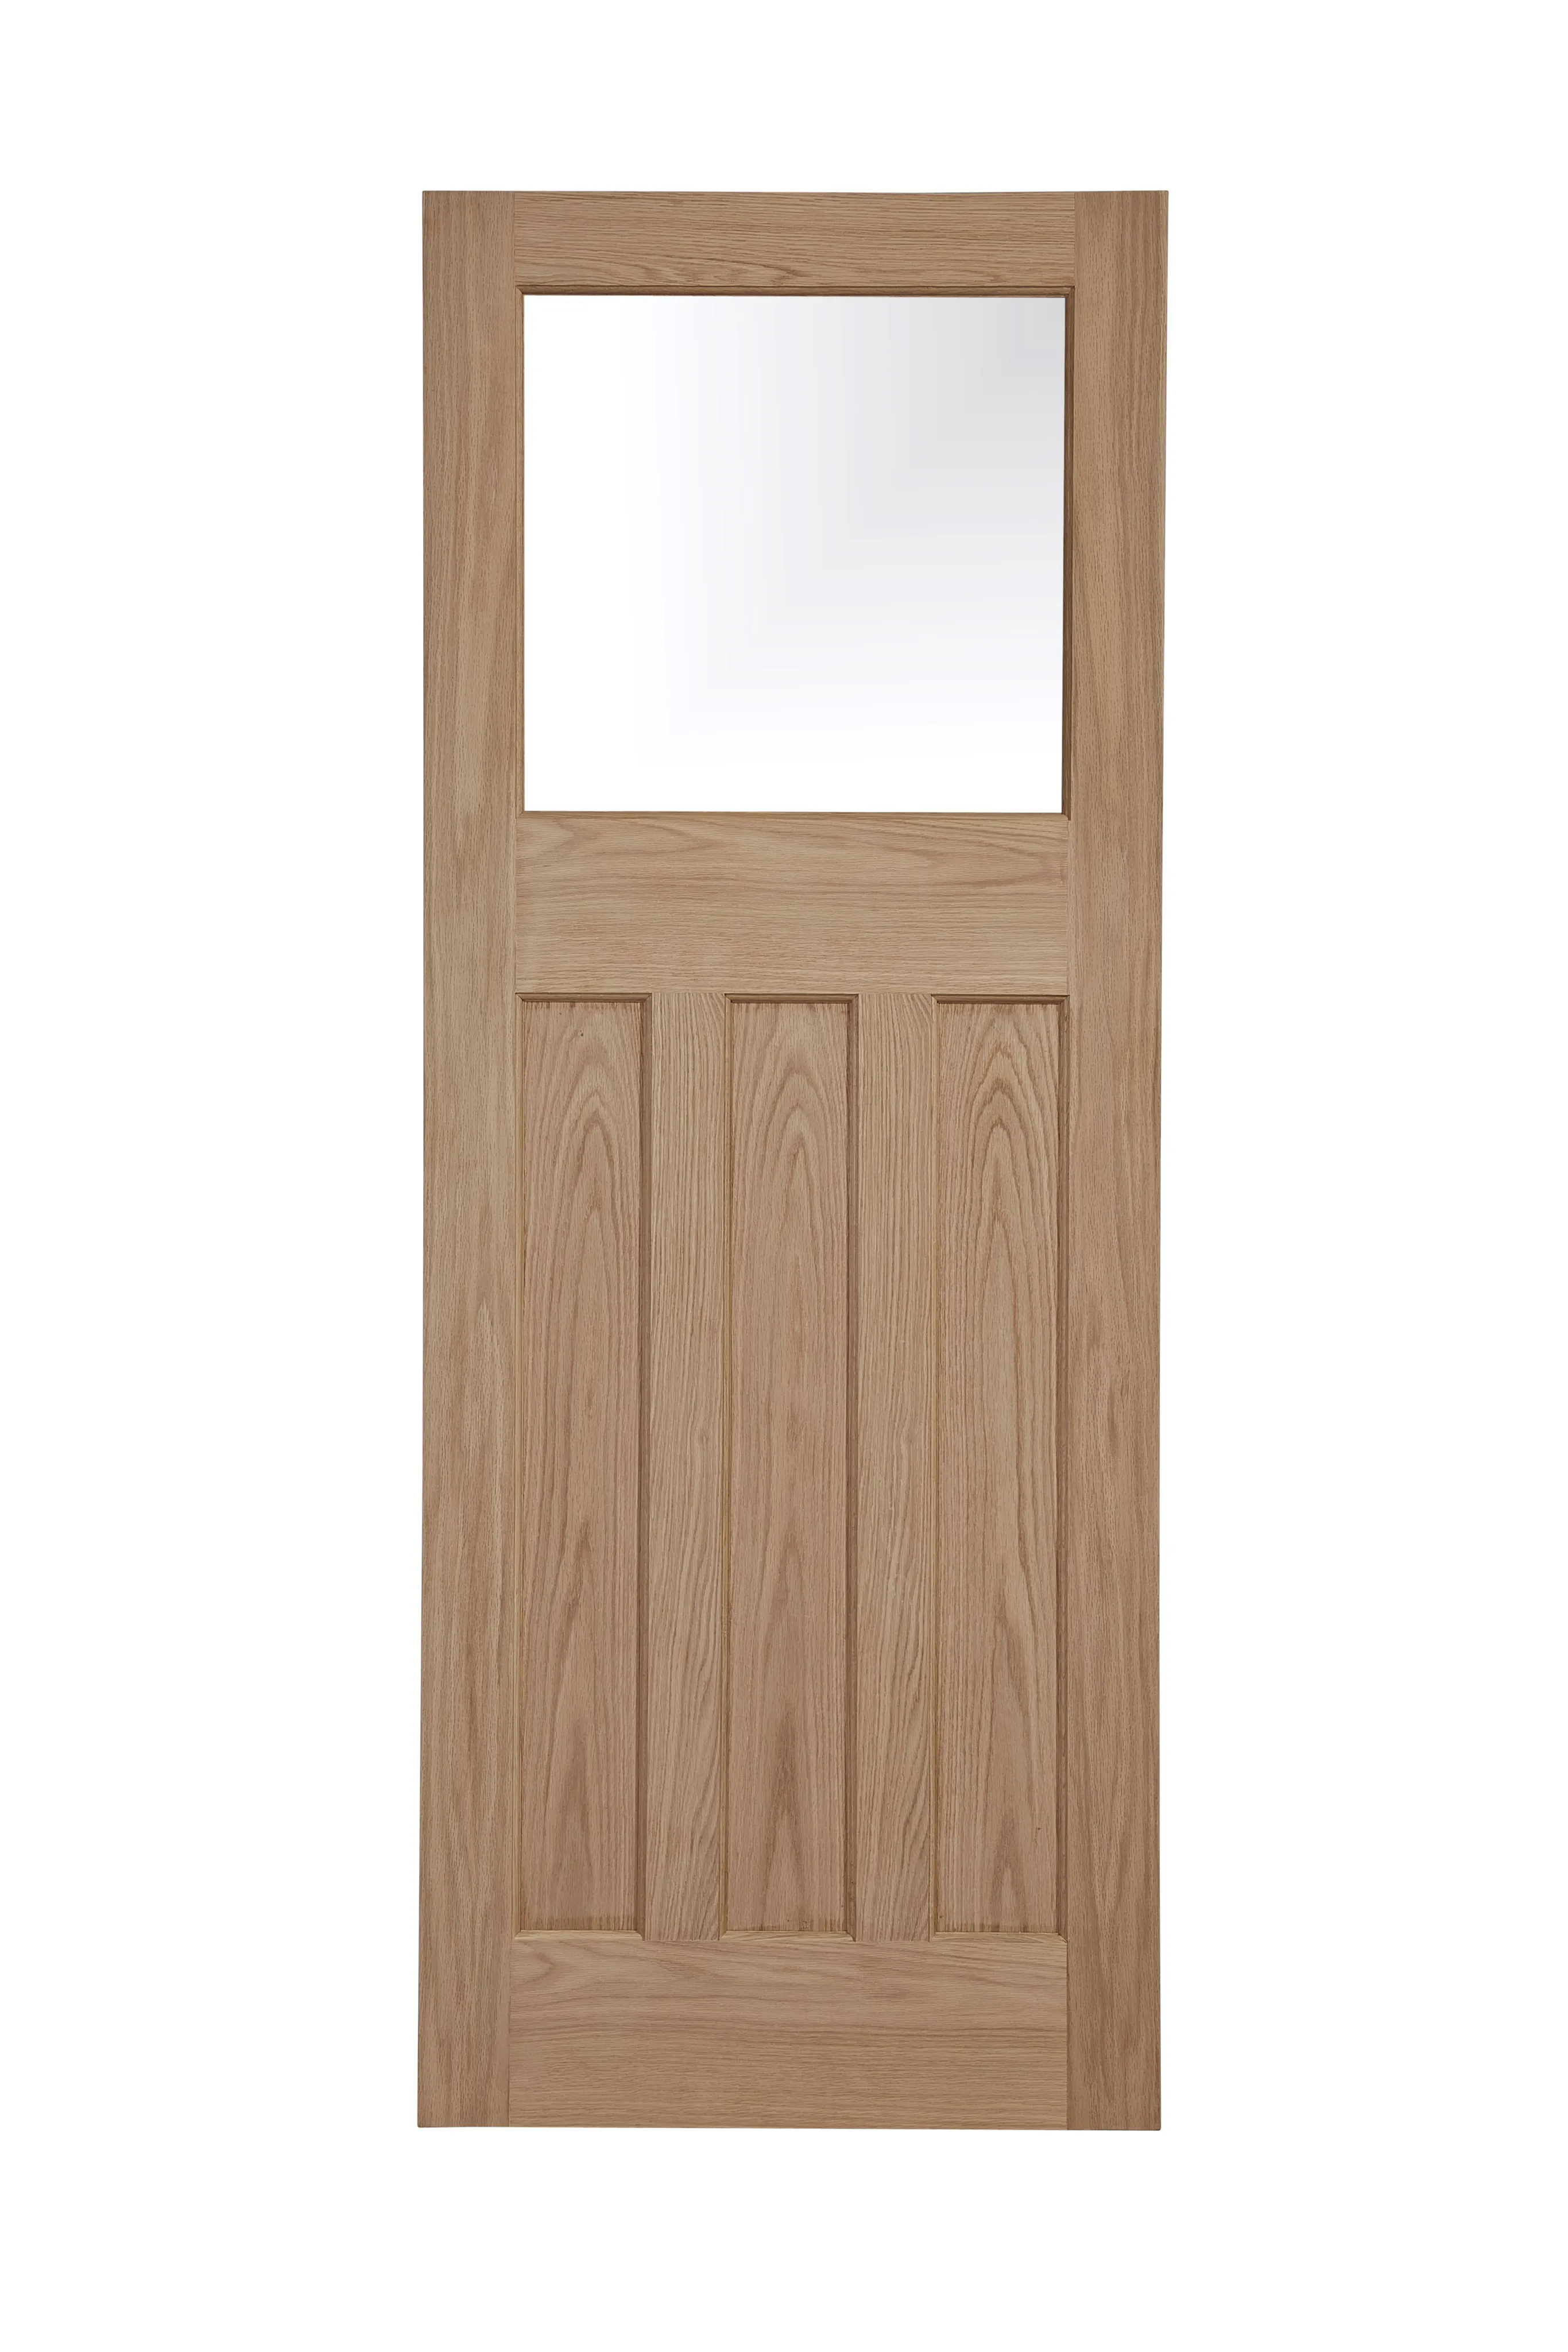 Glazed Traditional Oak veneer LH & RH Internal Door, (H)1981mm (W)686mm